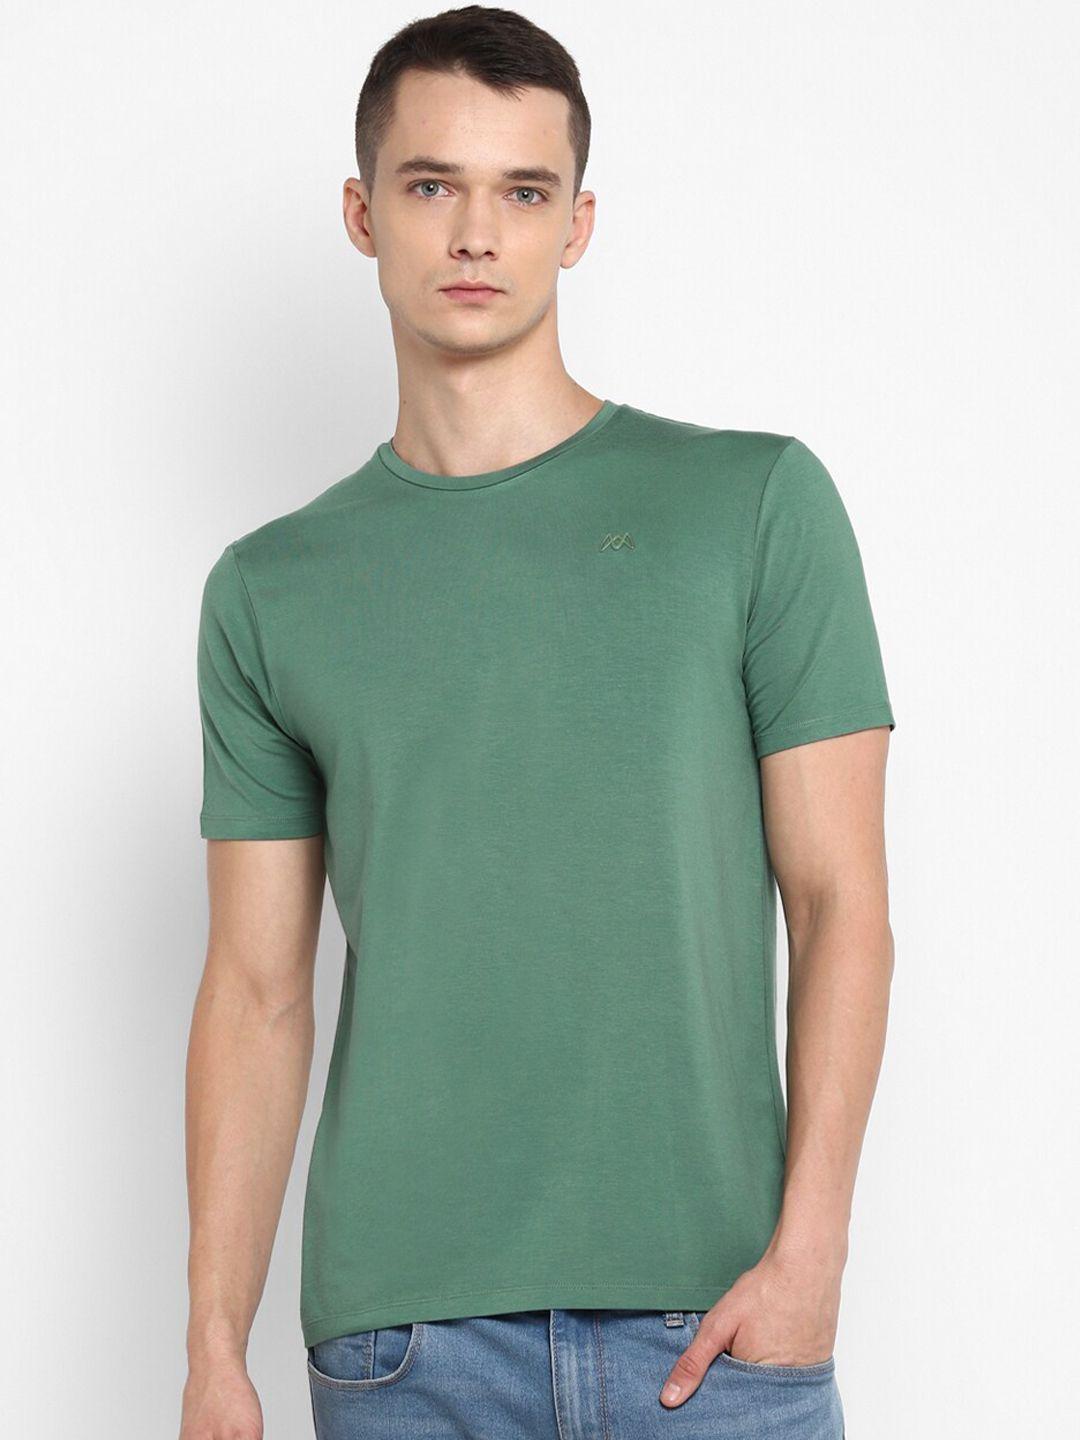 muwin men green brand logo t-shirt